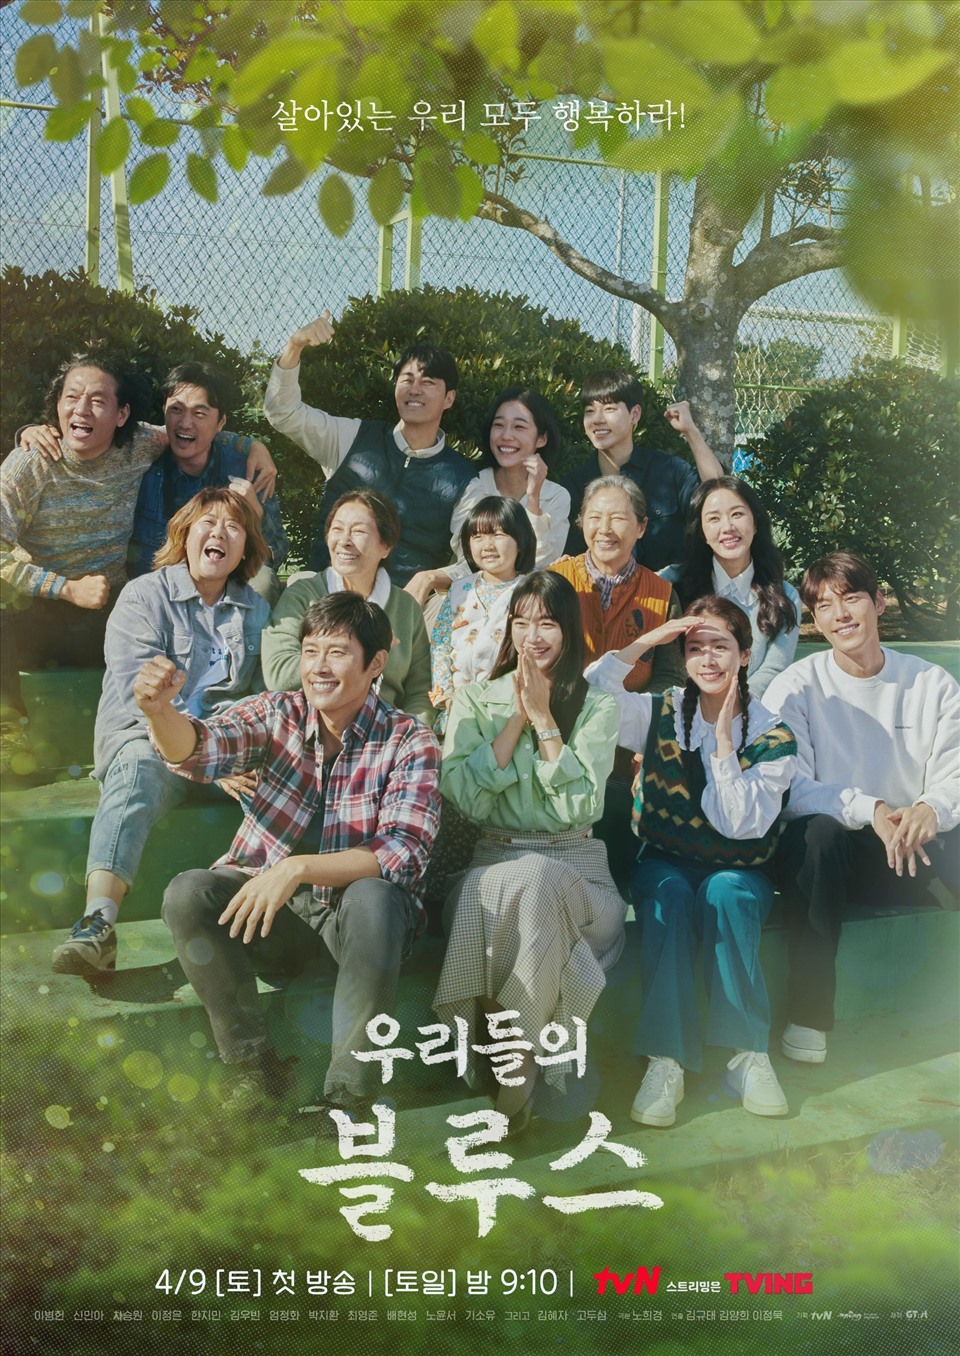 Phim mới nhất của Cha Seung Won: Blues nơi đảo xanh - Our blues (2022)